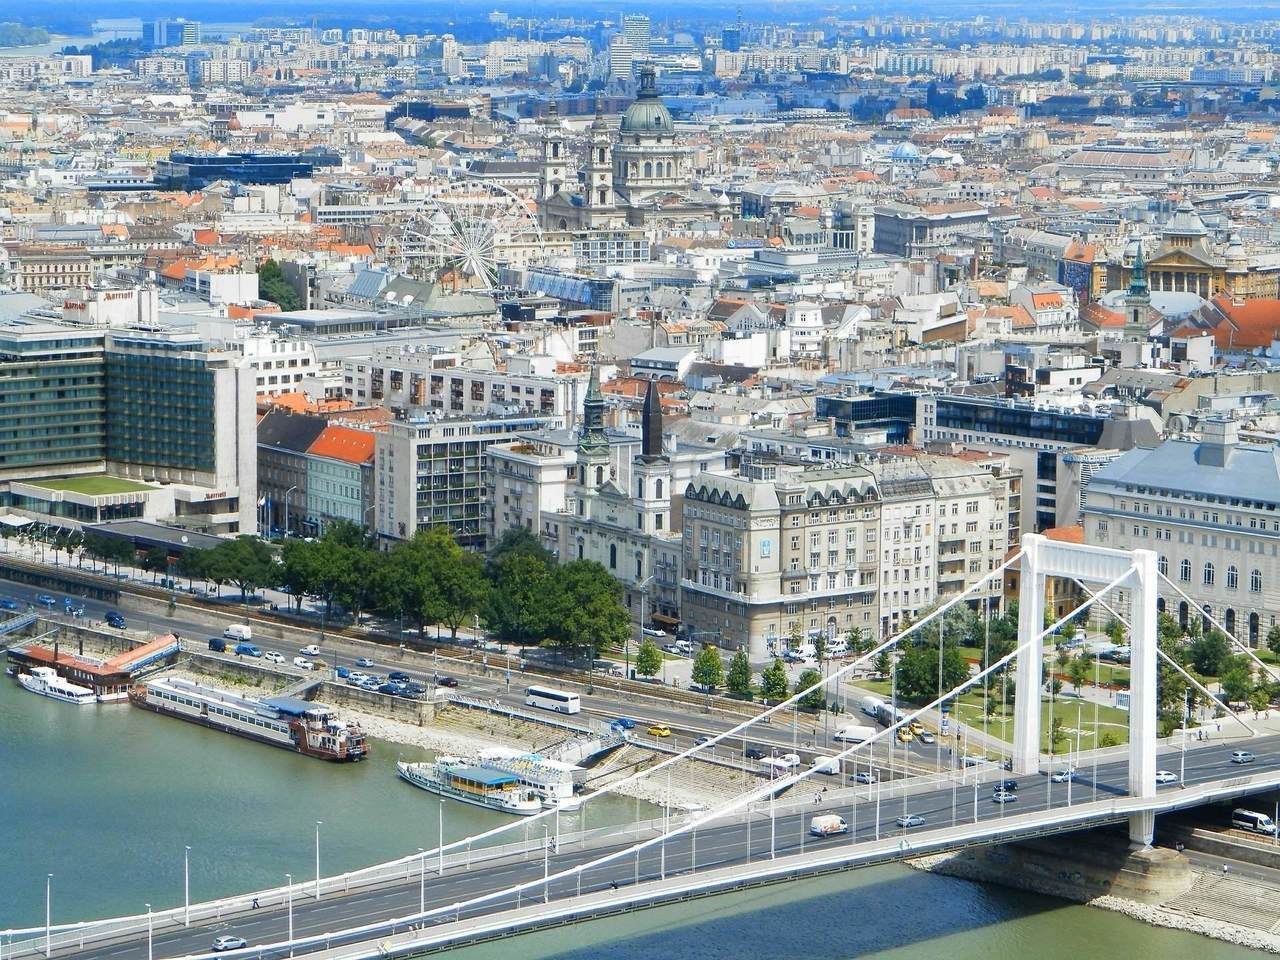 匈牙利 budapest_panorama 伊麗莎白橋